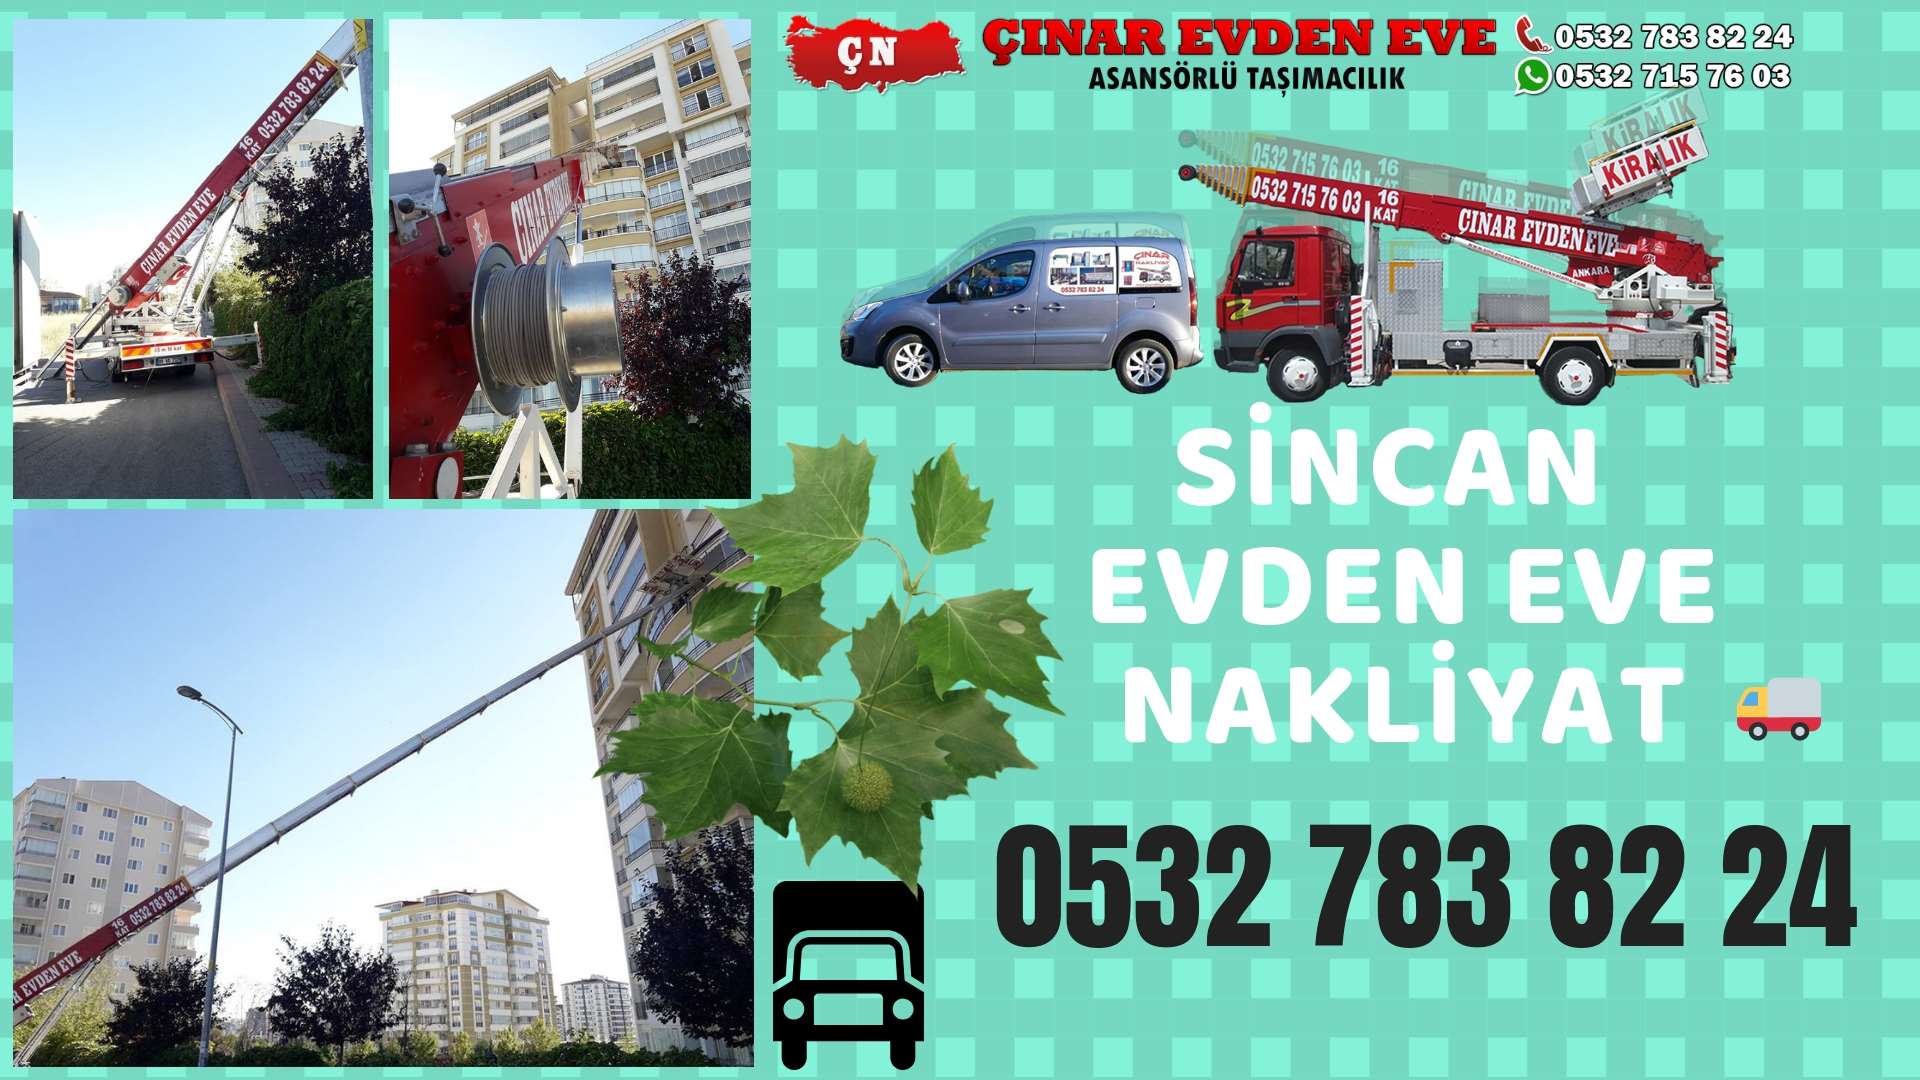 Ankara Bağlıca sincan ev eşya taşımacılığı, sincan evden eve 0532 715 76 03